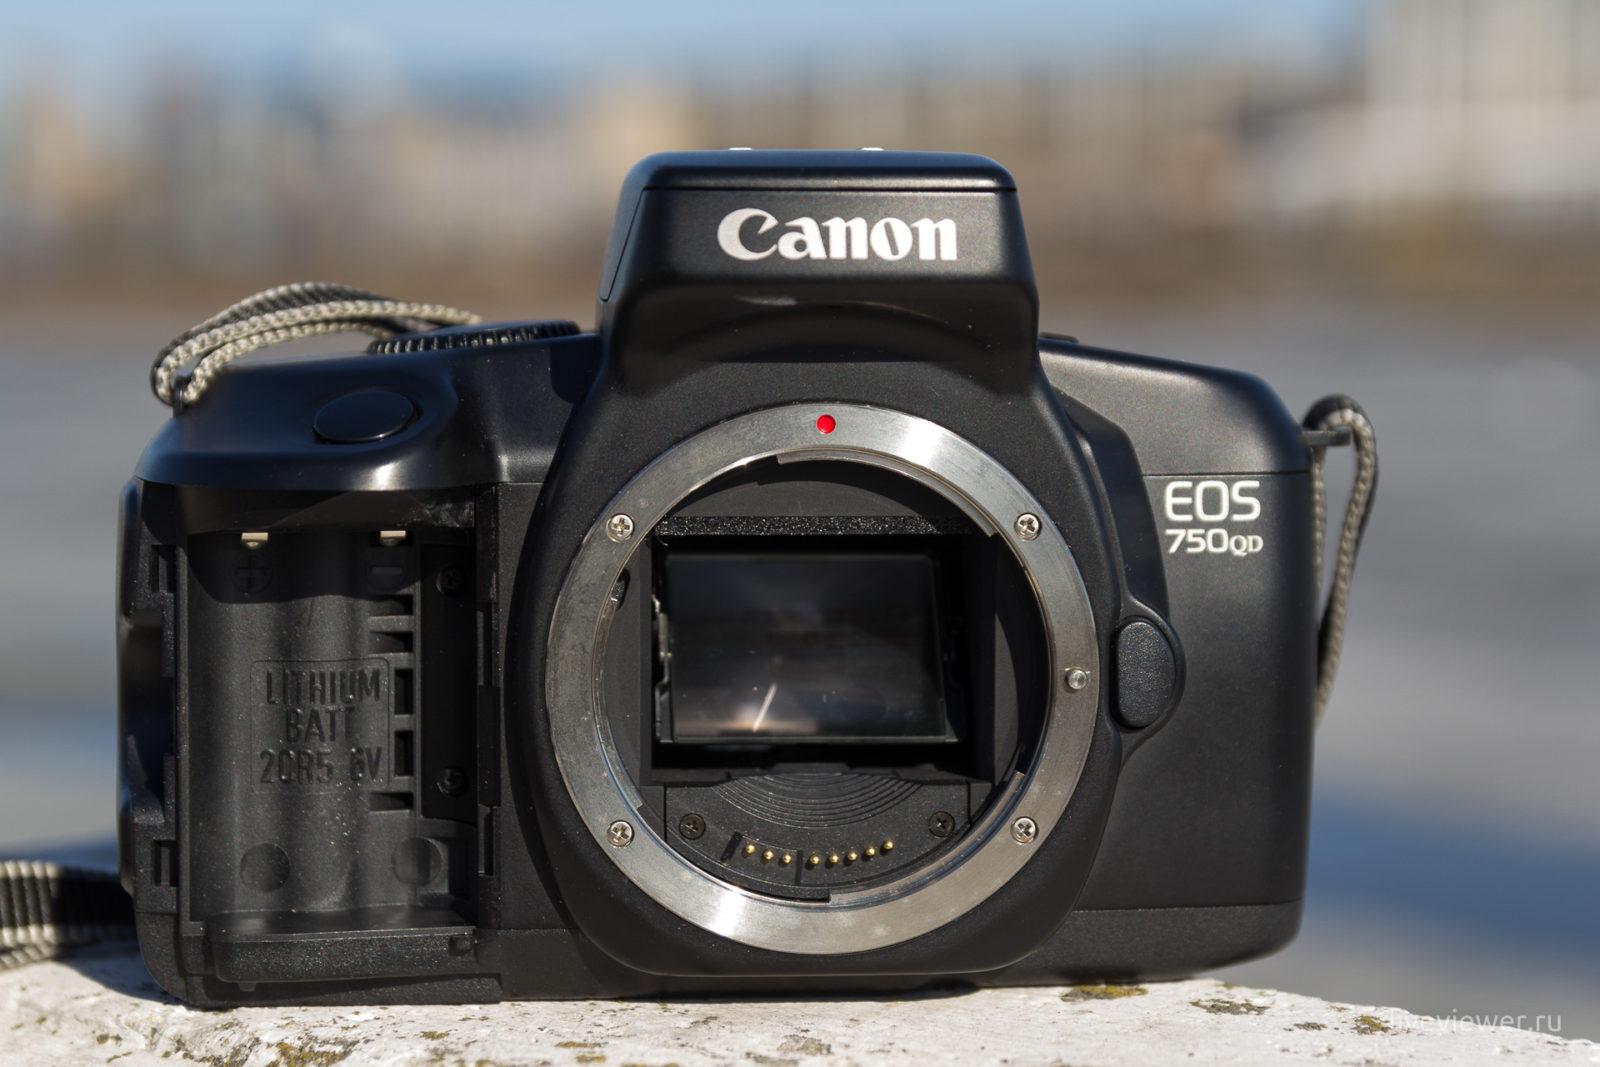 Canon EOS 750QD